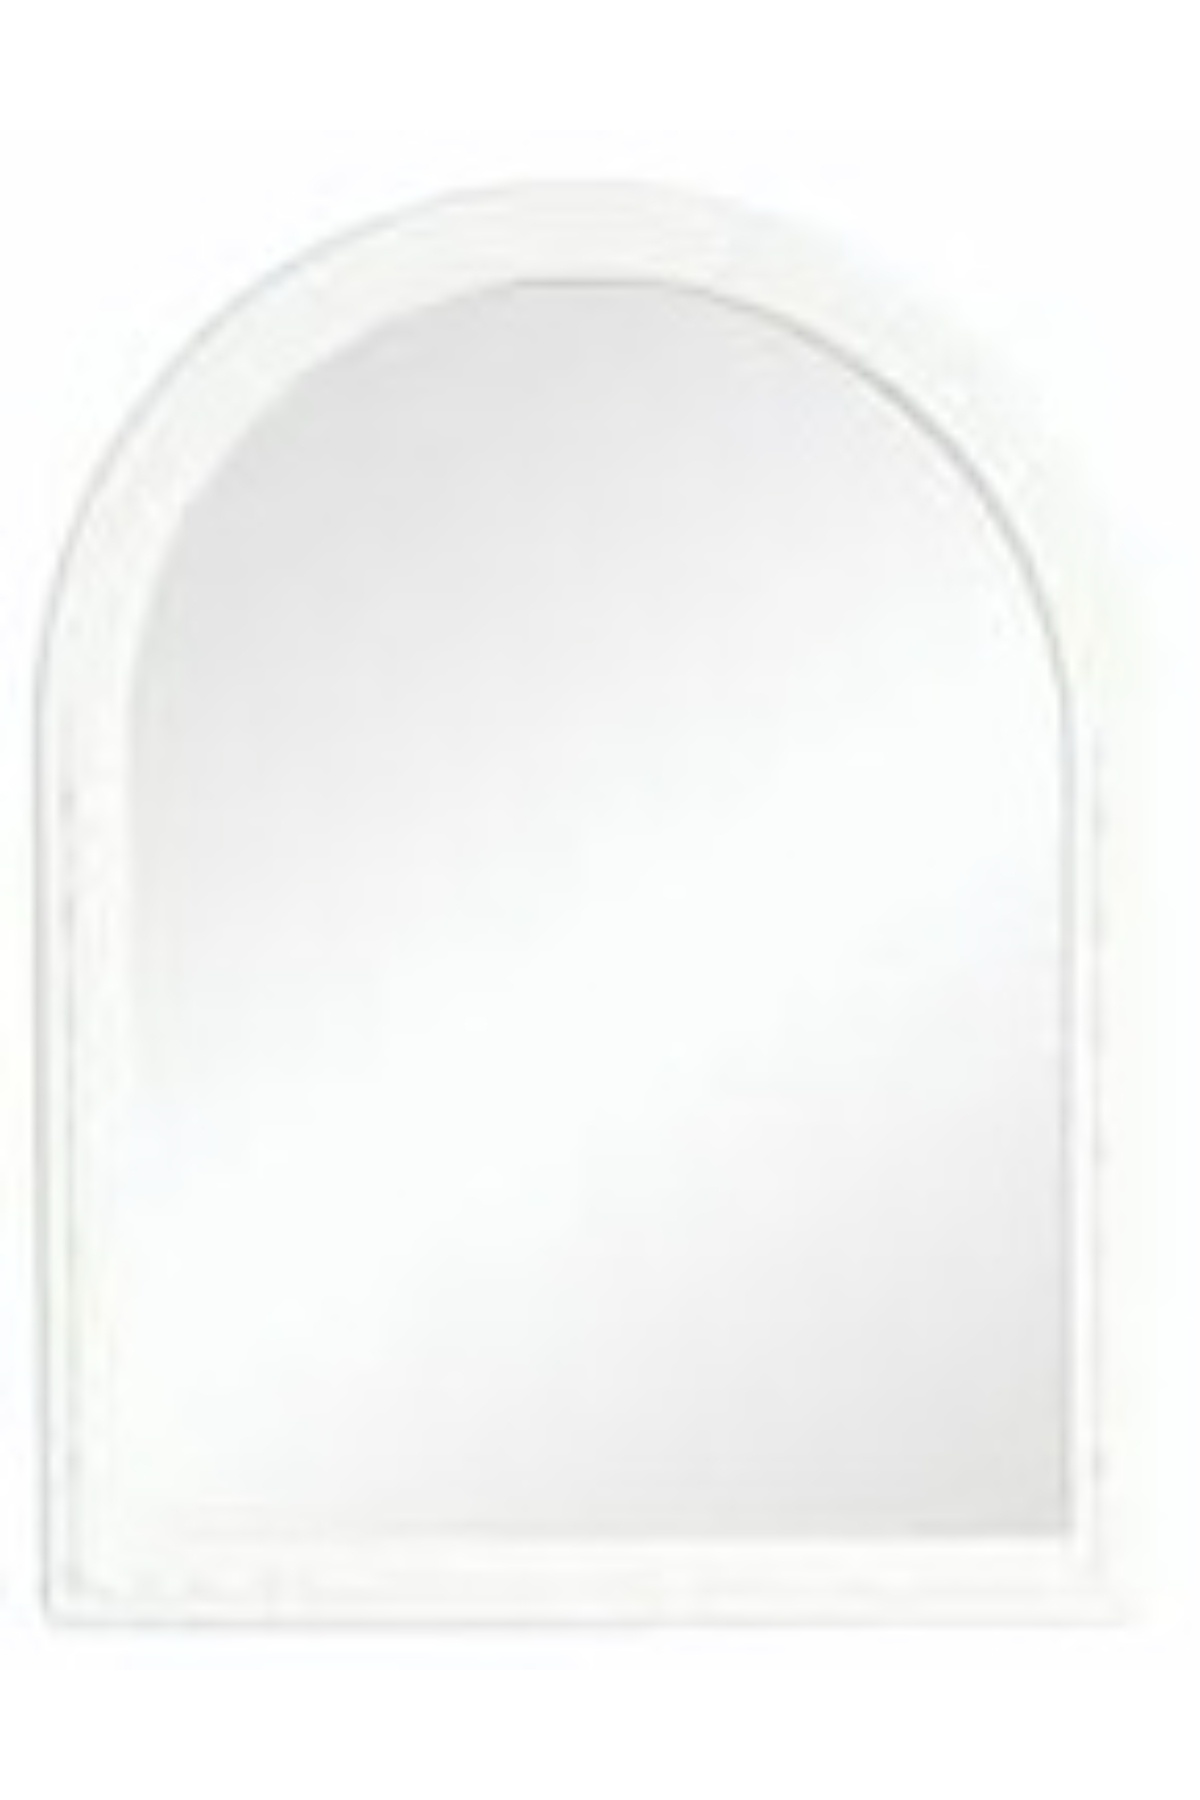 Çelik Ayna-167  Beyaz Orta  Tek Ayna*10 - 17-0069 - 2345